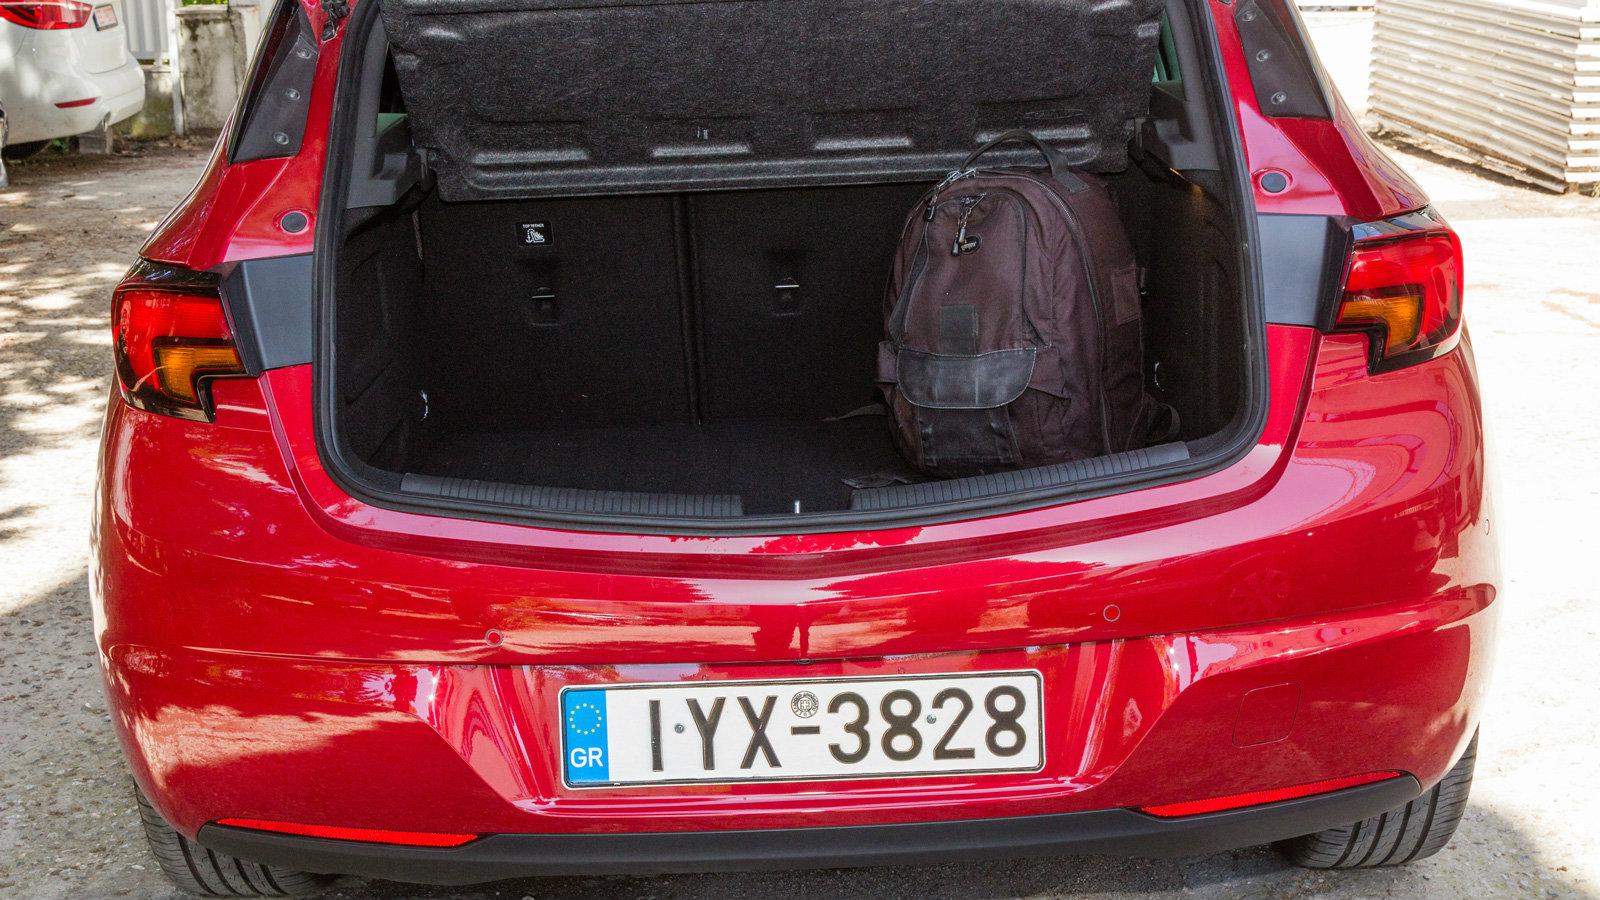 Δοκιμάζουμε το νέο Opel Astra facelift των 145 ίππων